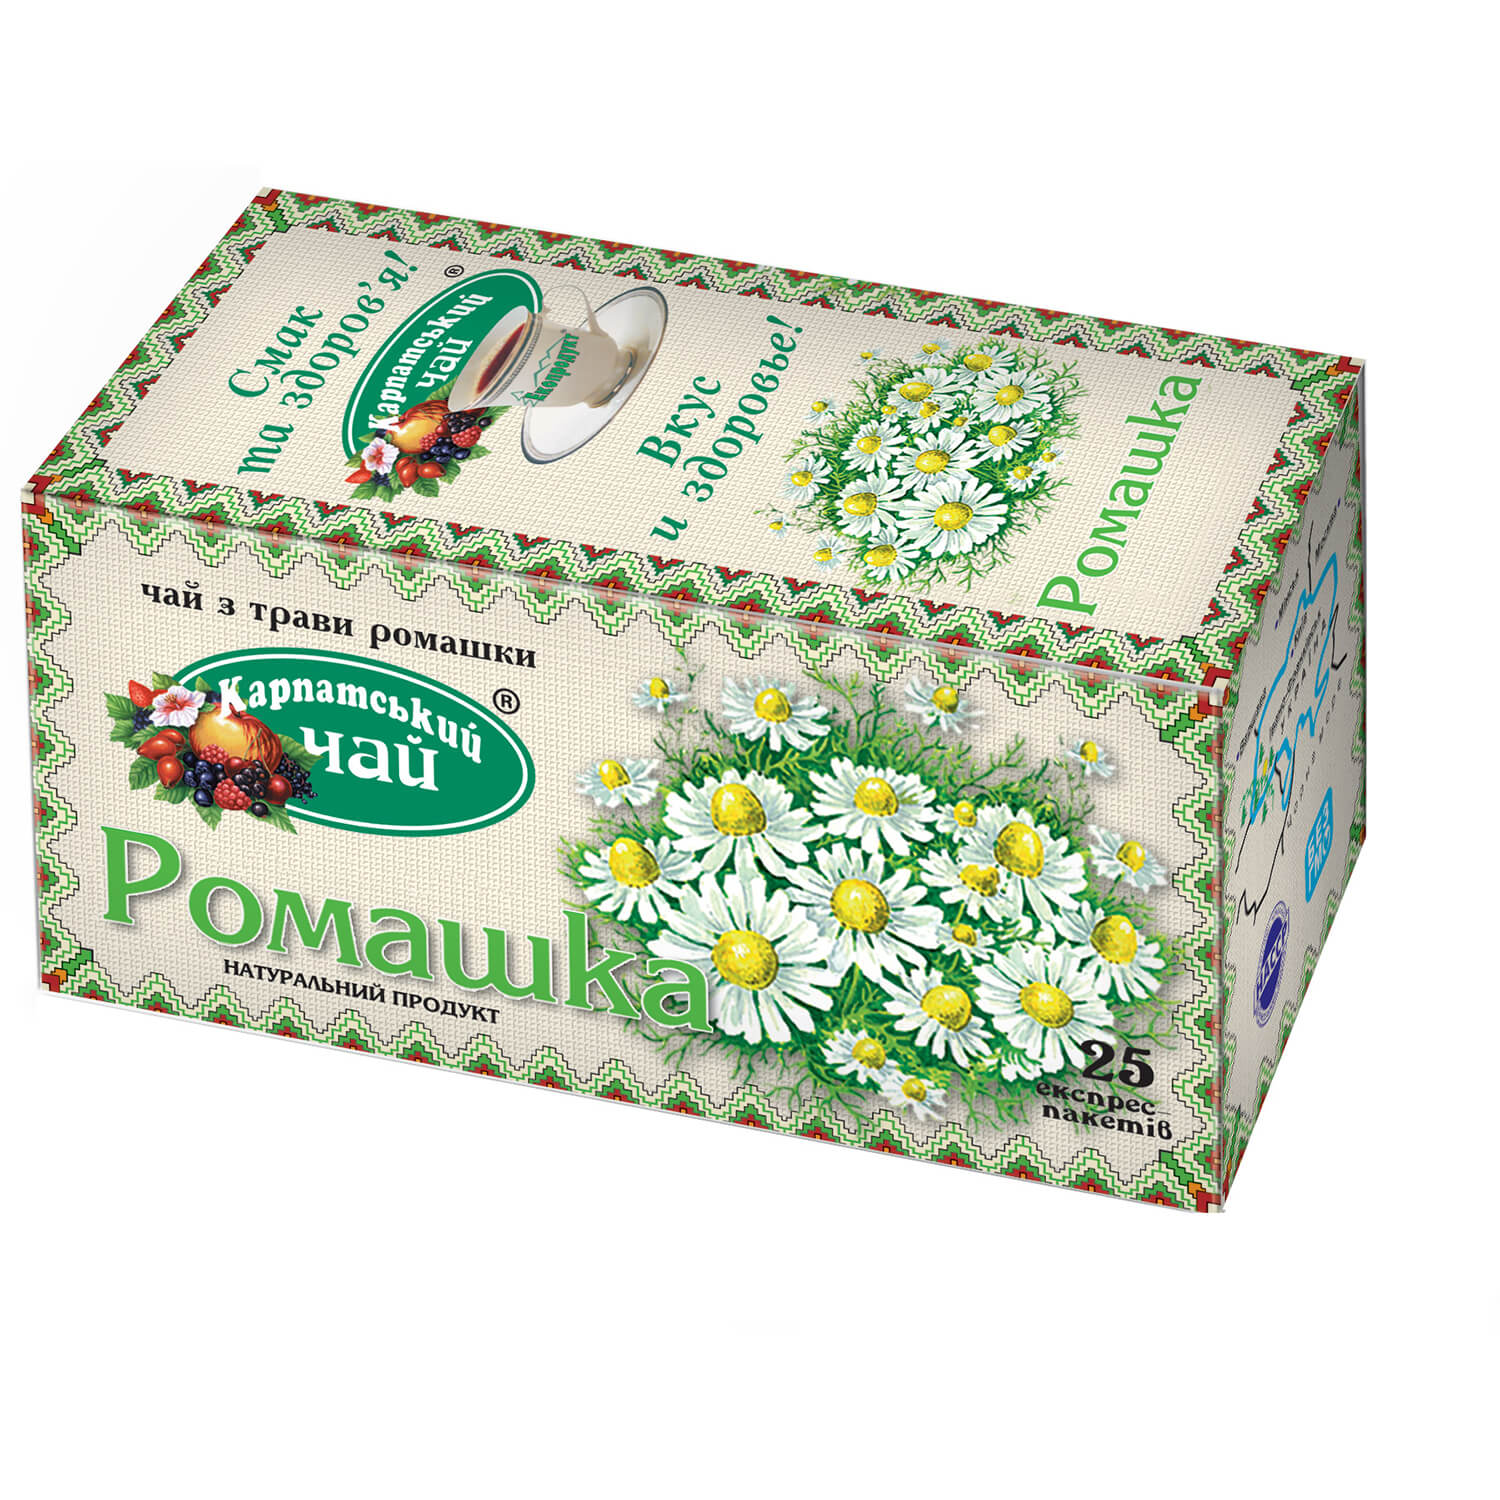 Чай Карпатський чай Ромашка, в пакетиках, 25 шт. (52130) - фото 1